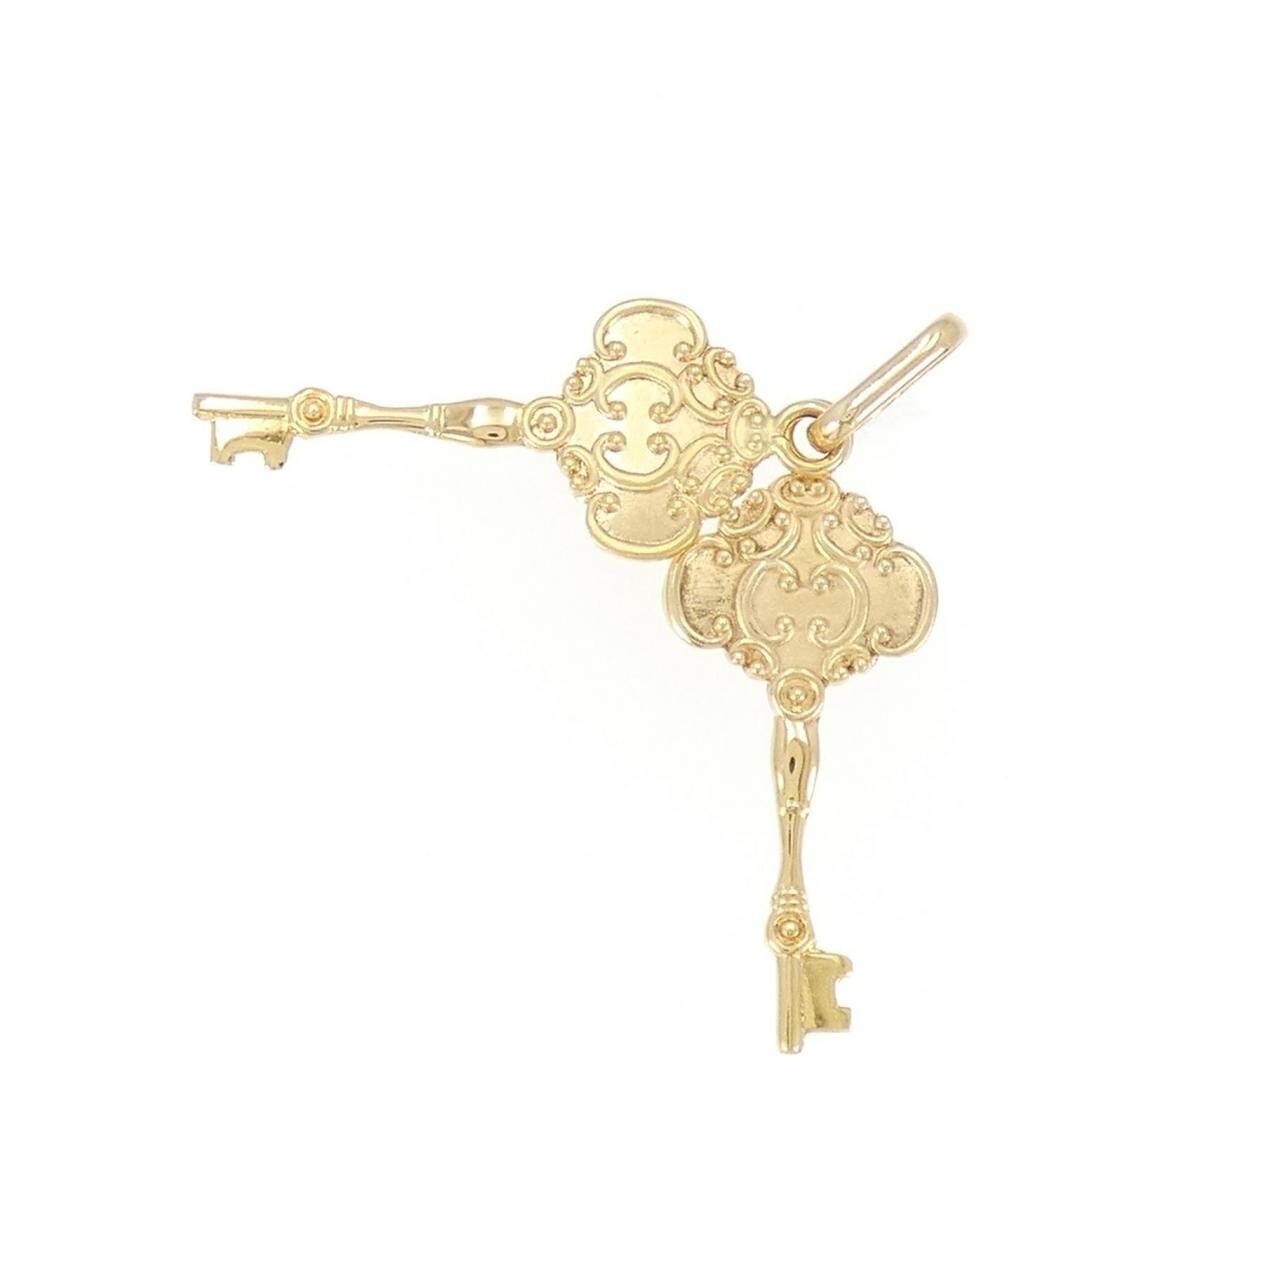 K18YG key pendant